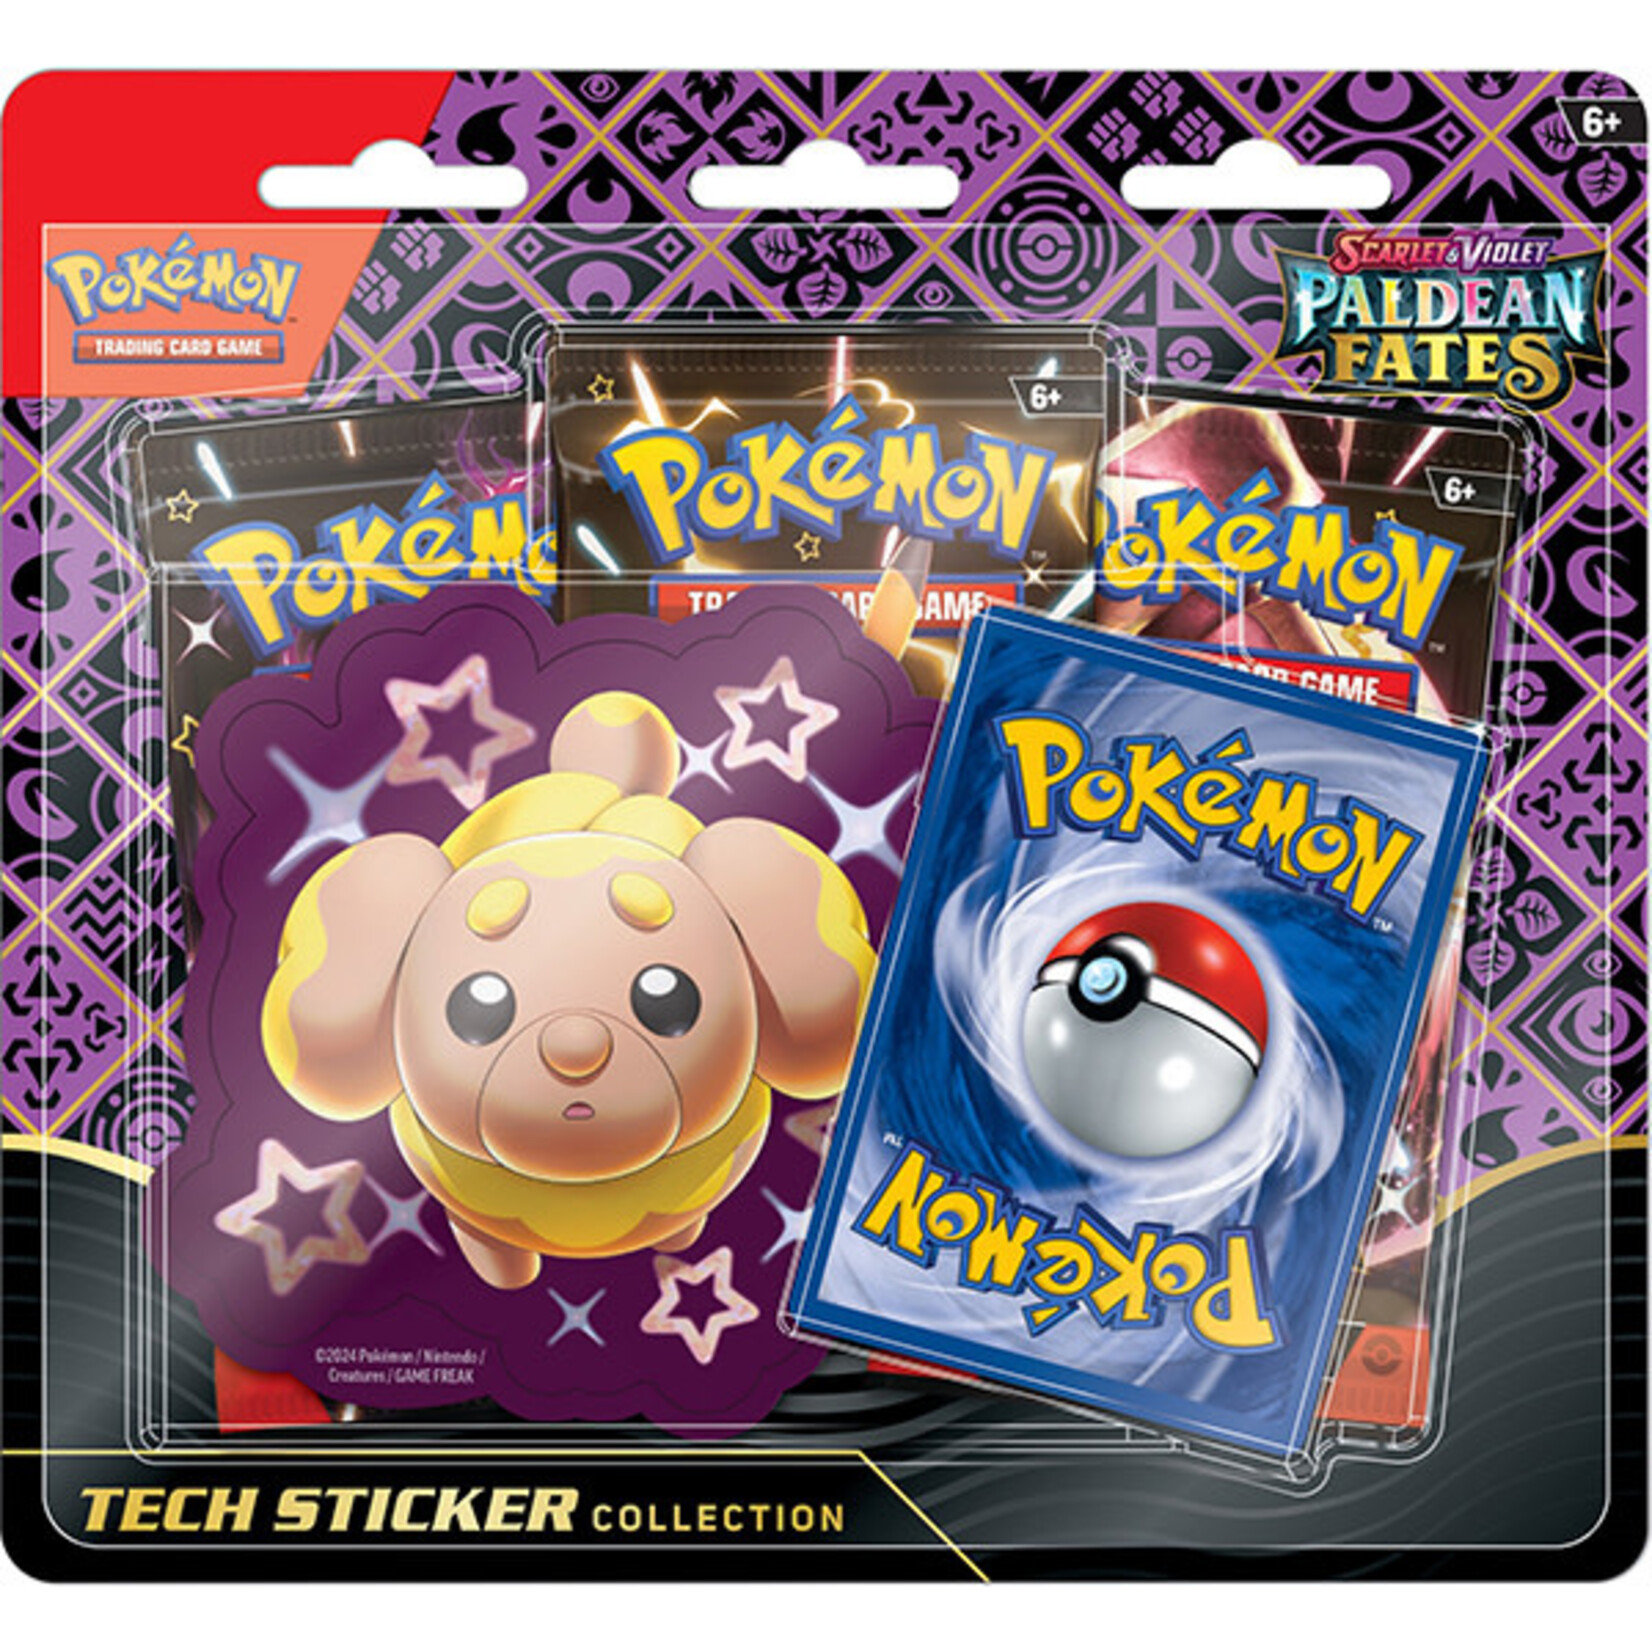 Pokémon Pokemon - Paldean Fates Tech Sticker Collection